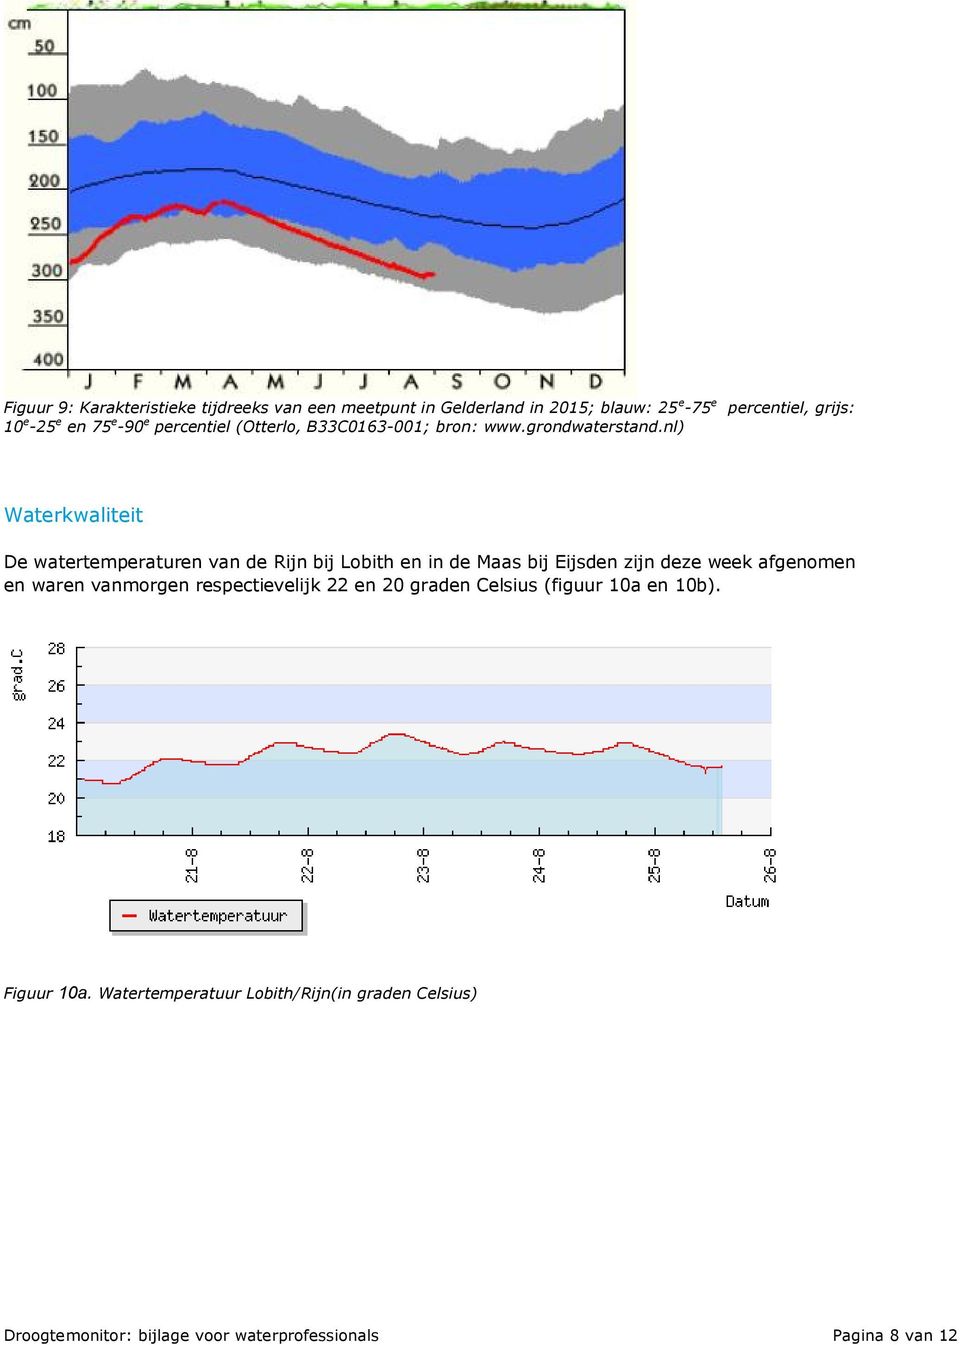 nl) percentiel, grijs: Waterkwaliteit De watertemperaturen van de Rijn bij Lobith en in de Maas bij Eijsden zijn deze week